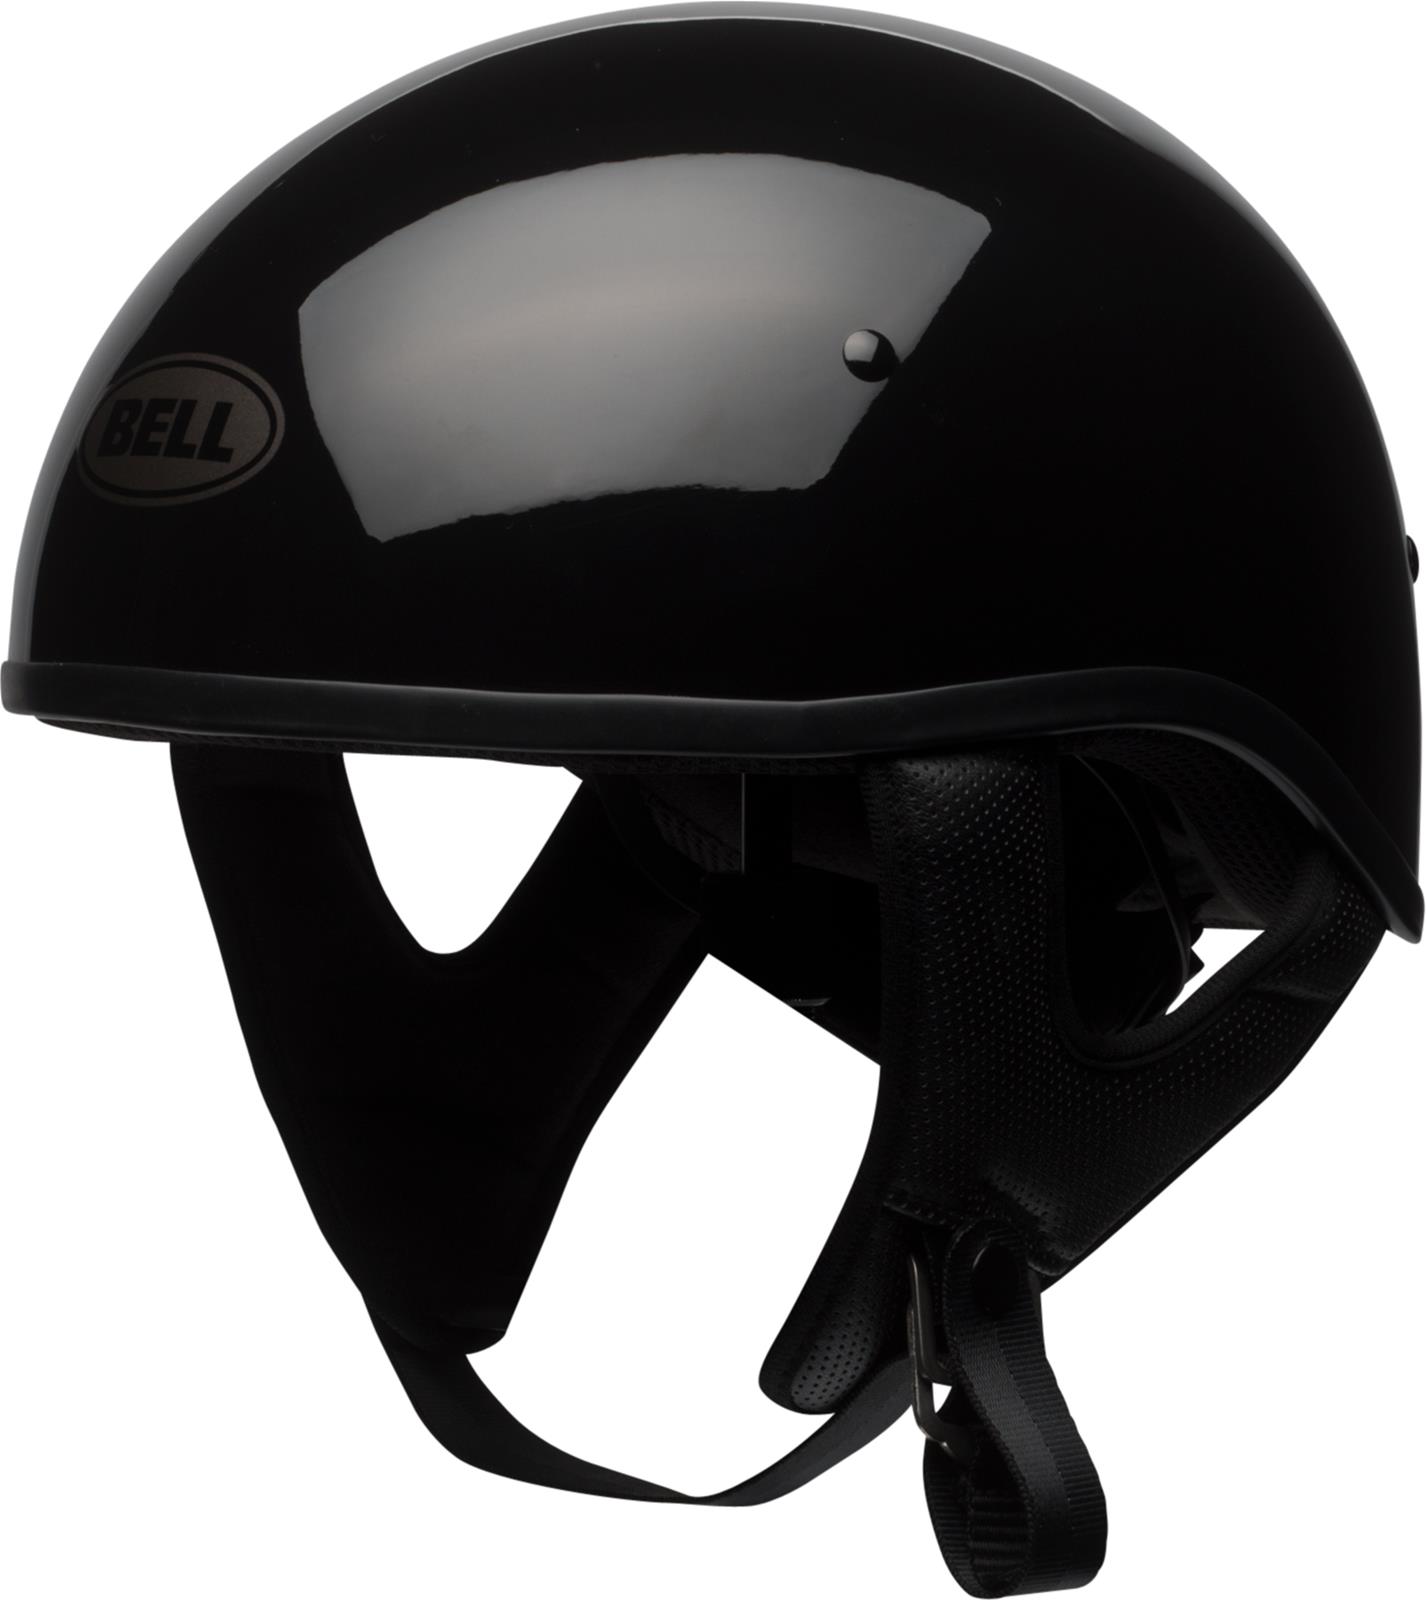 Motorcycle Helmets Pit Boss Helmets | Summit Racing